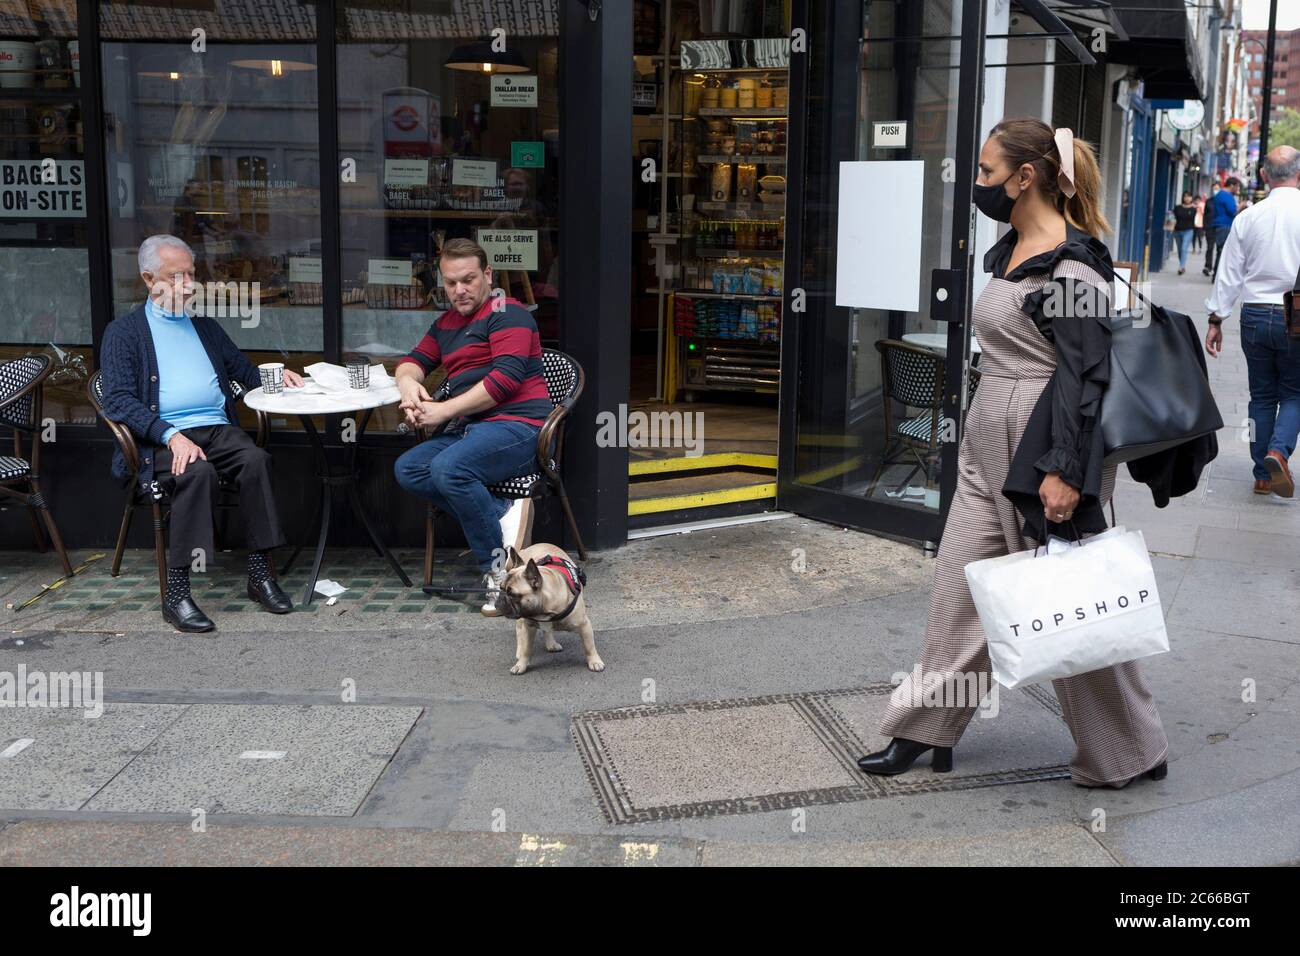 Con las reglas de bloqueo de la pandemia de Coronavirus siendo aliviadas, los pubs y los negocios de restaurantes están reabriendo lentamente y los clientes con distanciamiento social y su perro se sientan fuera de un café y la gente-observa en Wardour Street en Soho, en el West End de la capital, el 6 de julio de 2020, en Londres, Inglaterra. Foto de stock